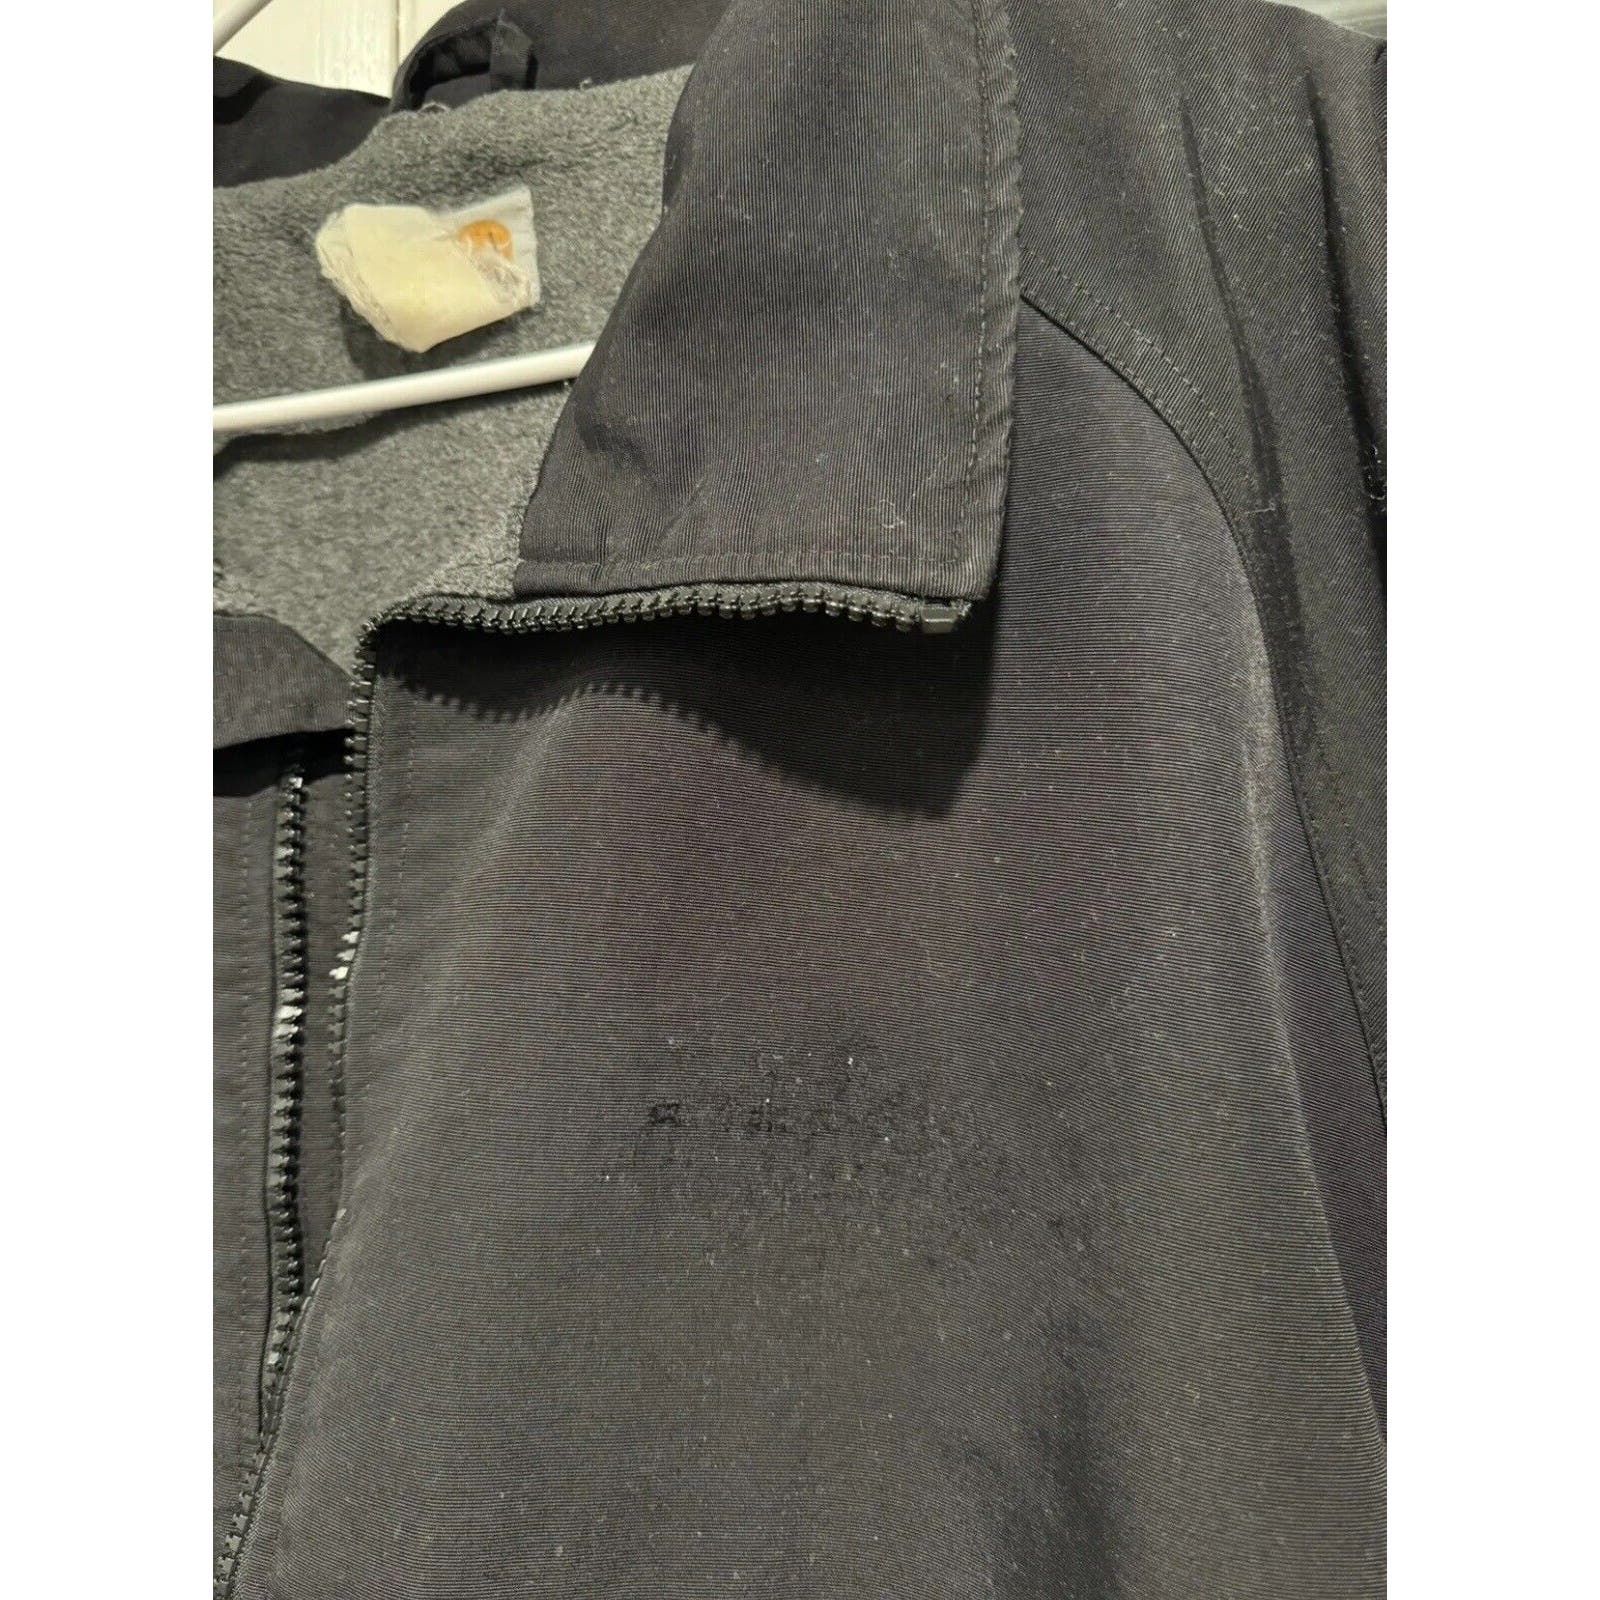 Carhartt Vintage Carhartt Workshield Jacket Fleece Lined Black J72 Size US XL / EU 56 / 4 - 7 Thumbnail